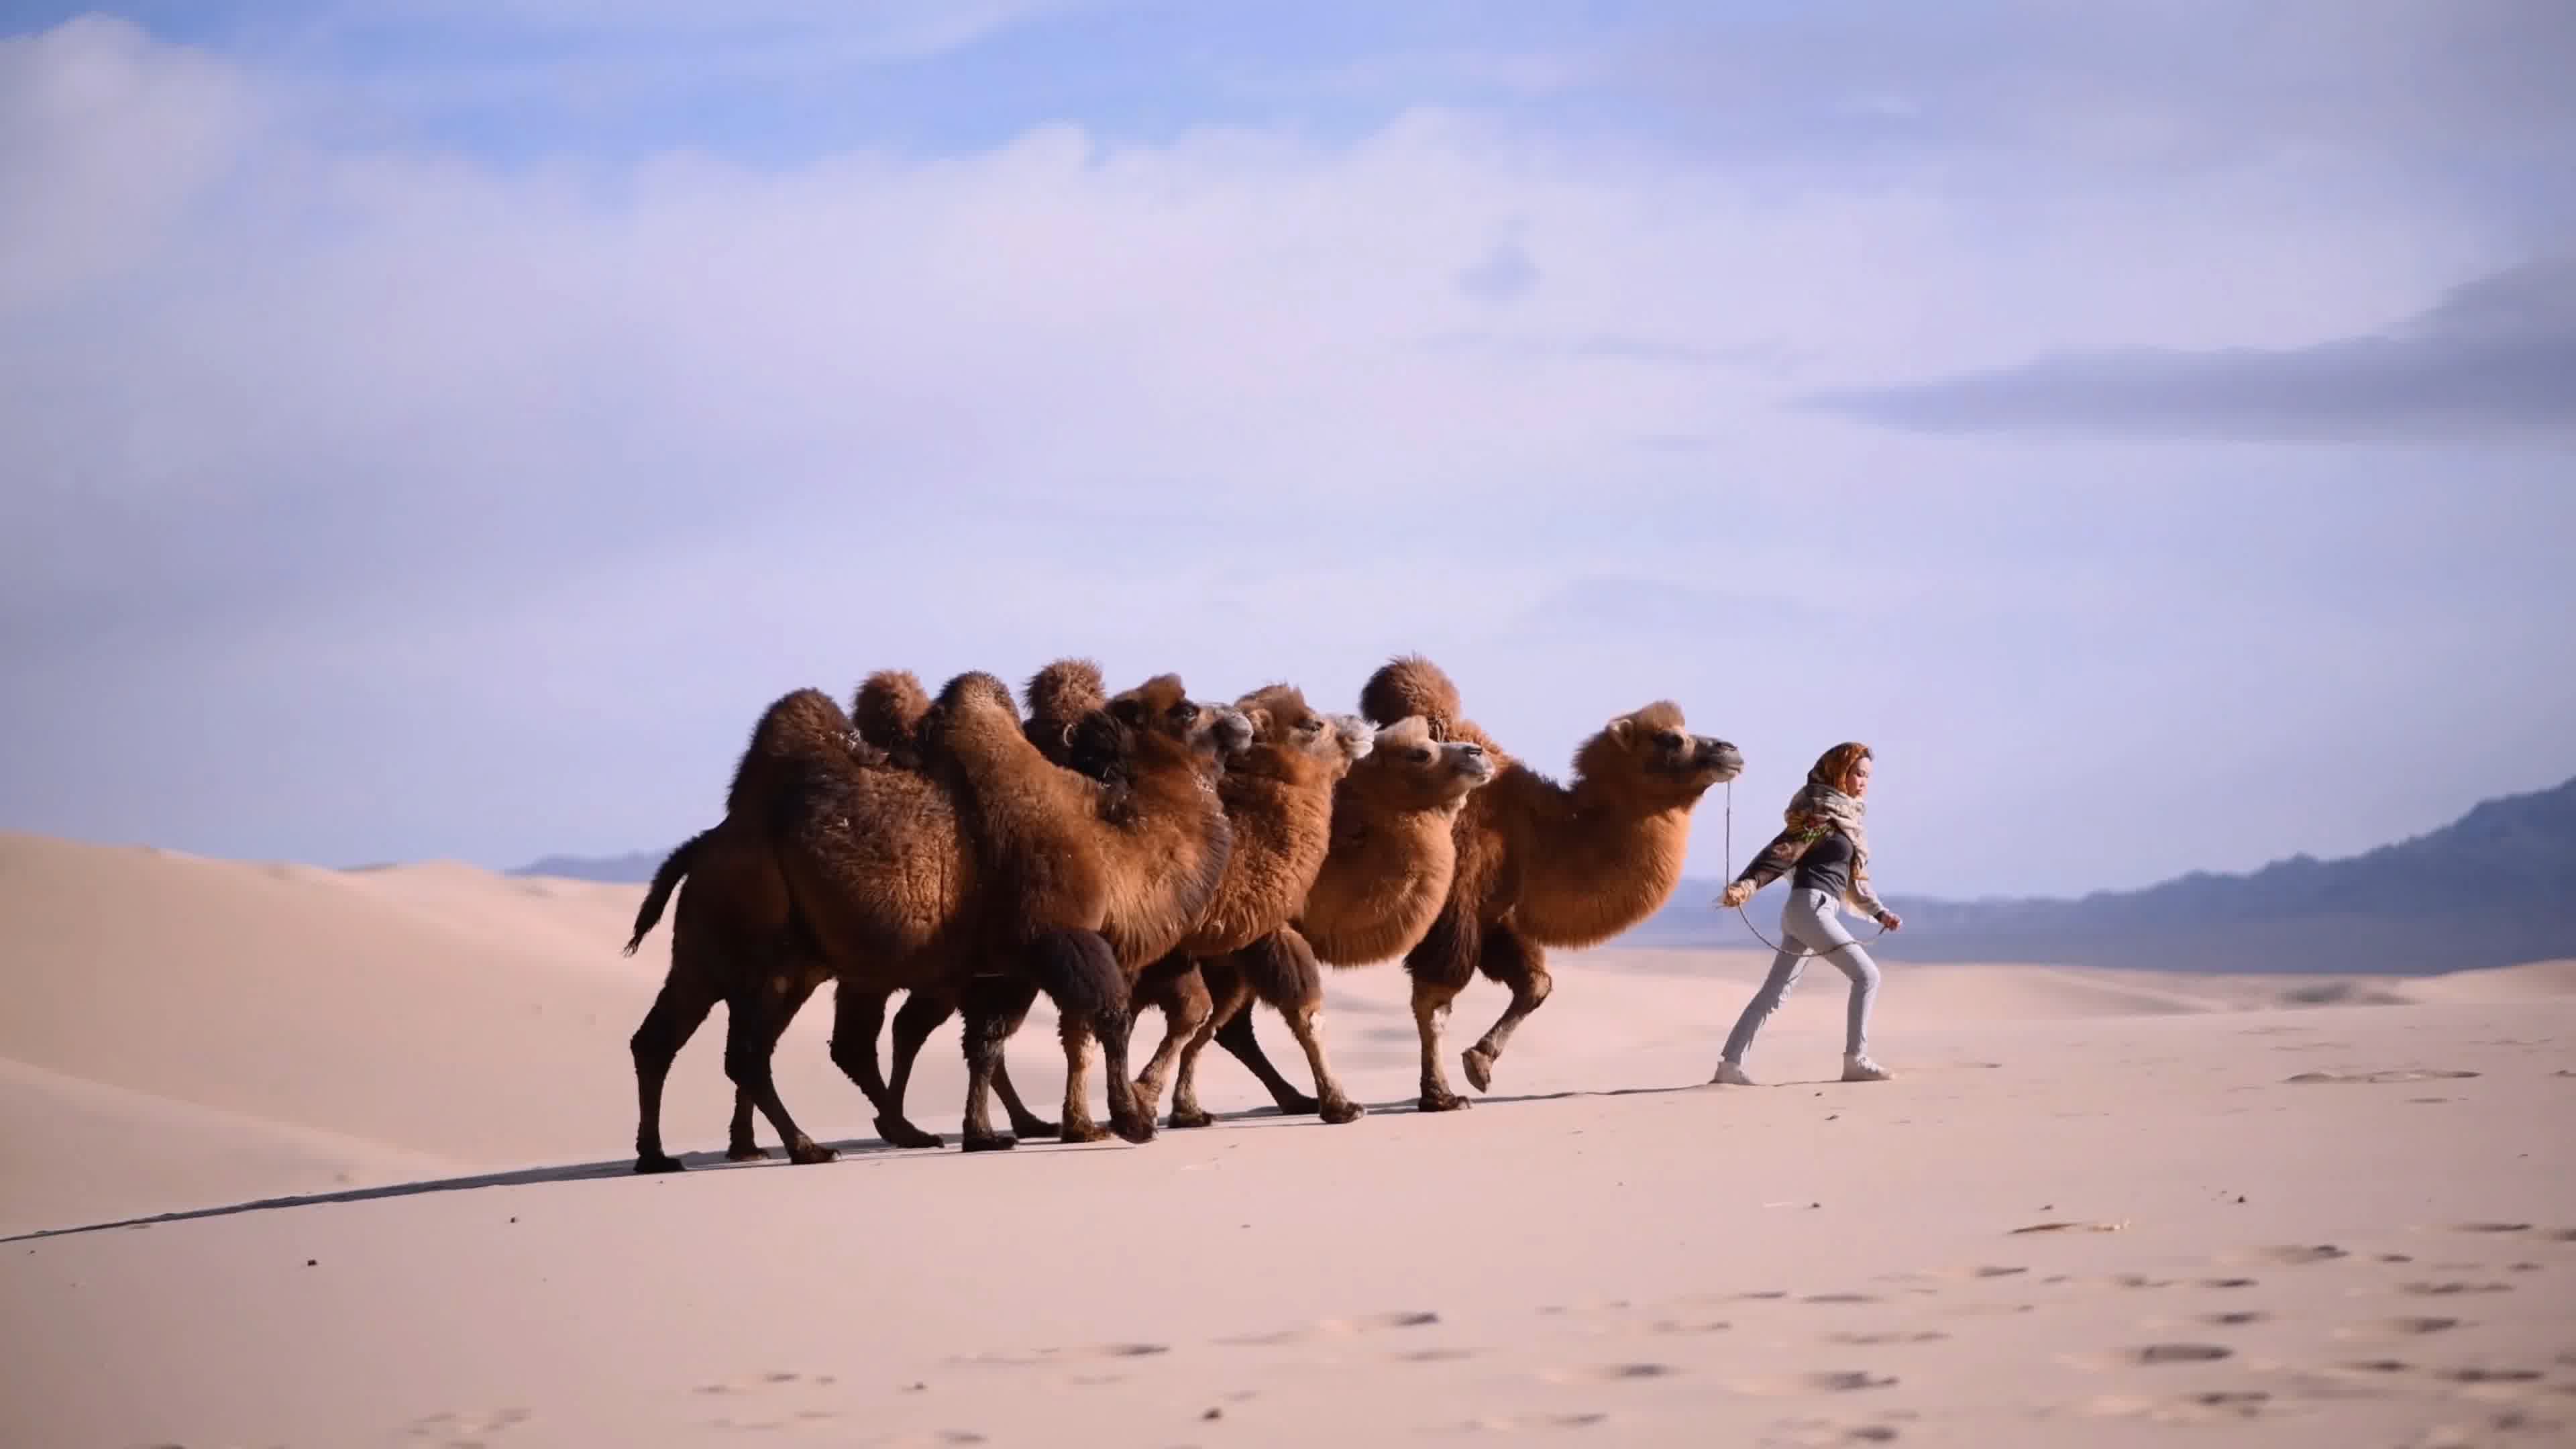 骑骆驼埃及沙漠的女孩 库存图片. 图片 包括有 蓝色, 本质, 冒险家, 孩子, 埃及, 骆驼, 小丘 - 237399963